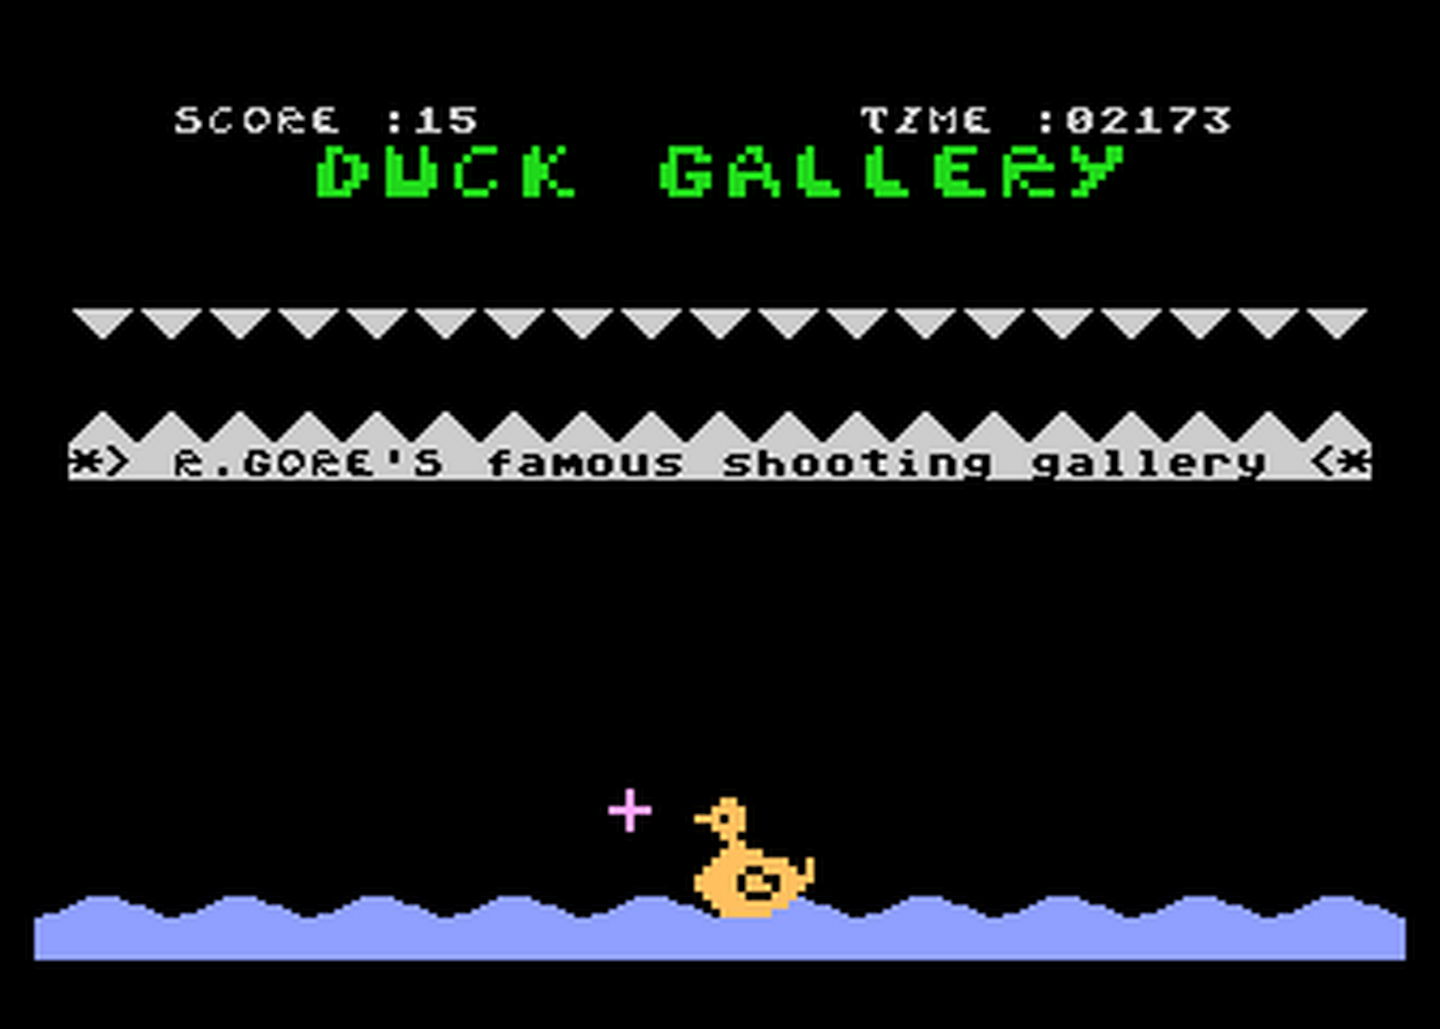 Atari GameBase Duck_Gallery (No_Publisher) 1990